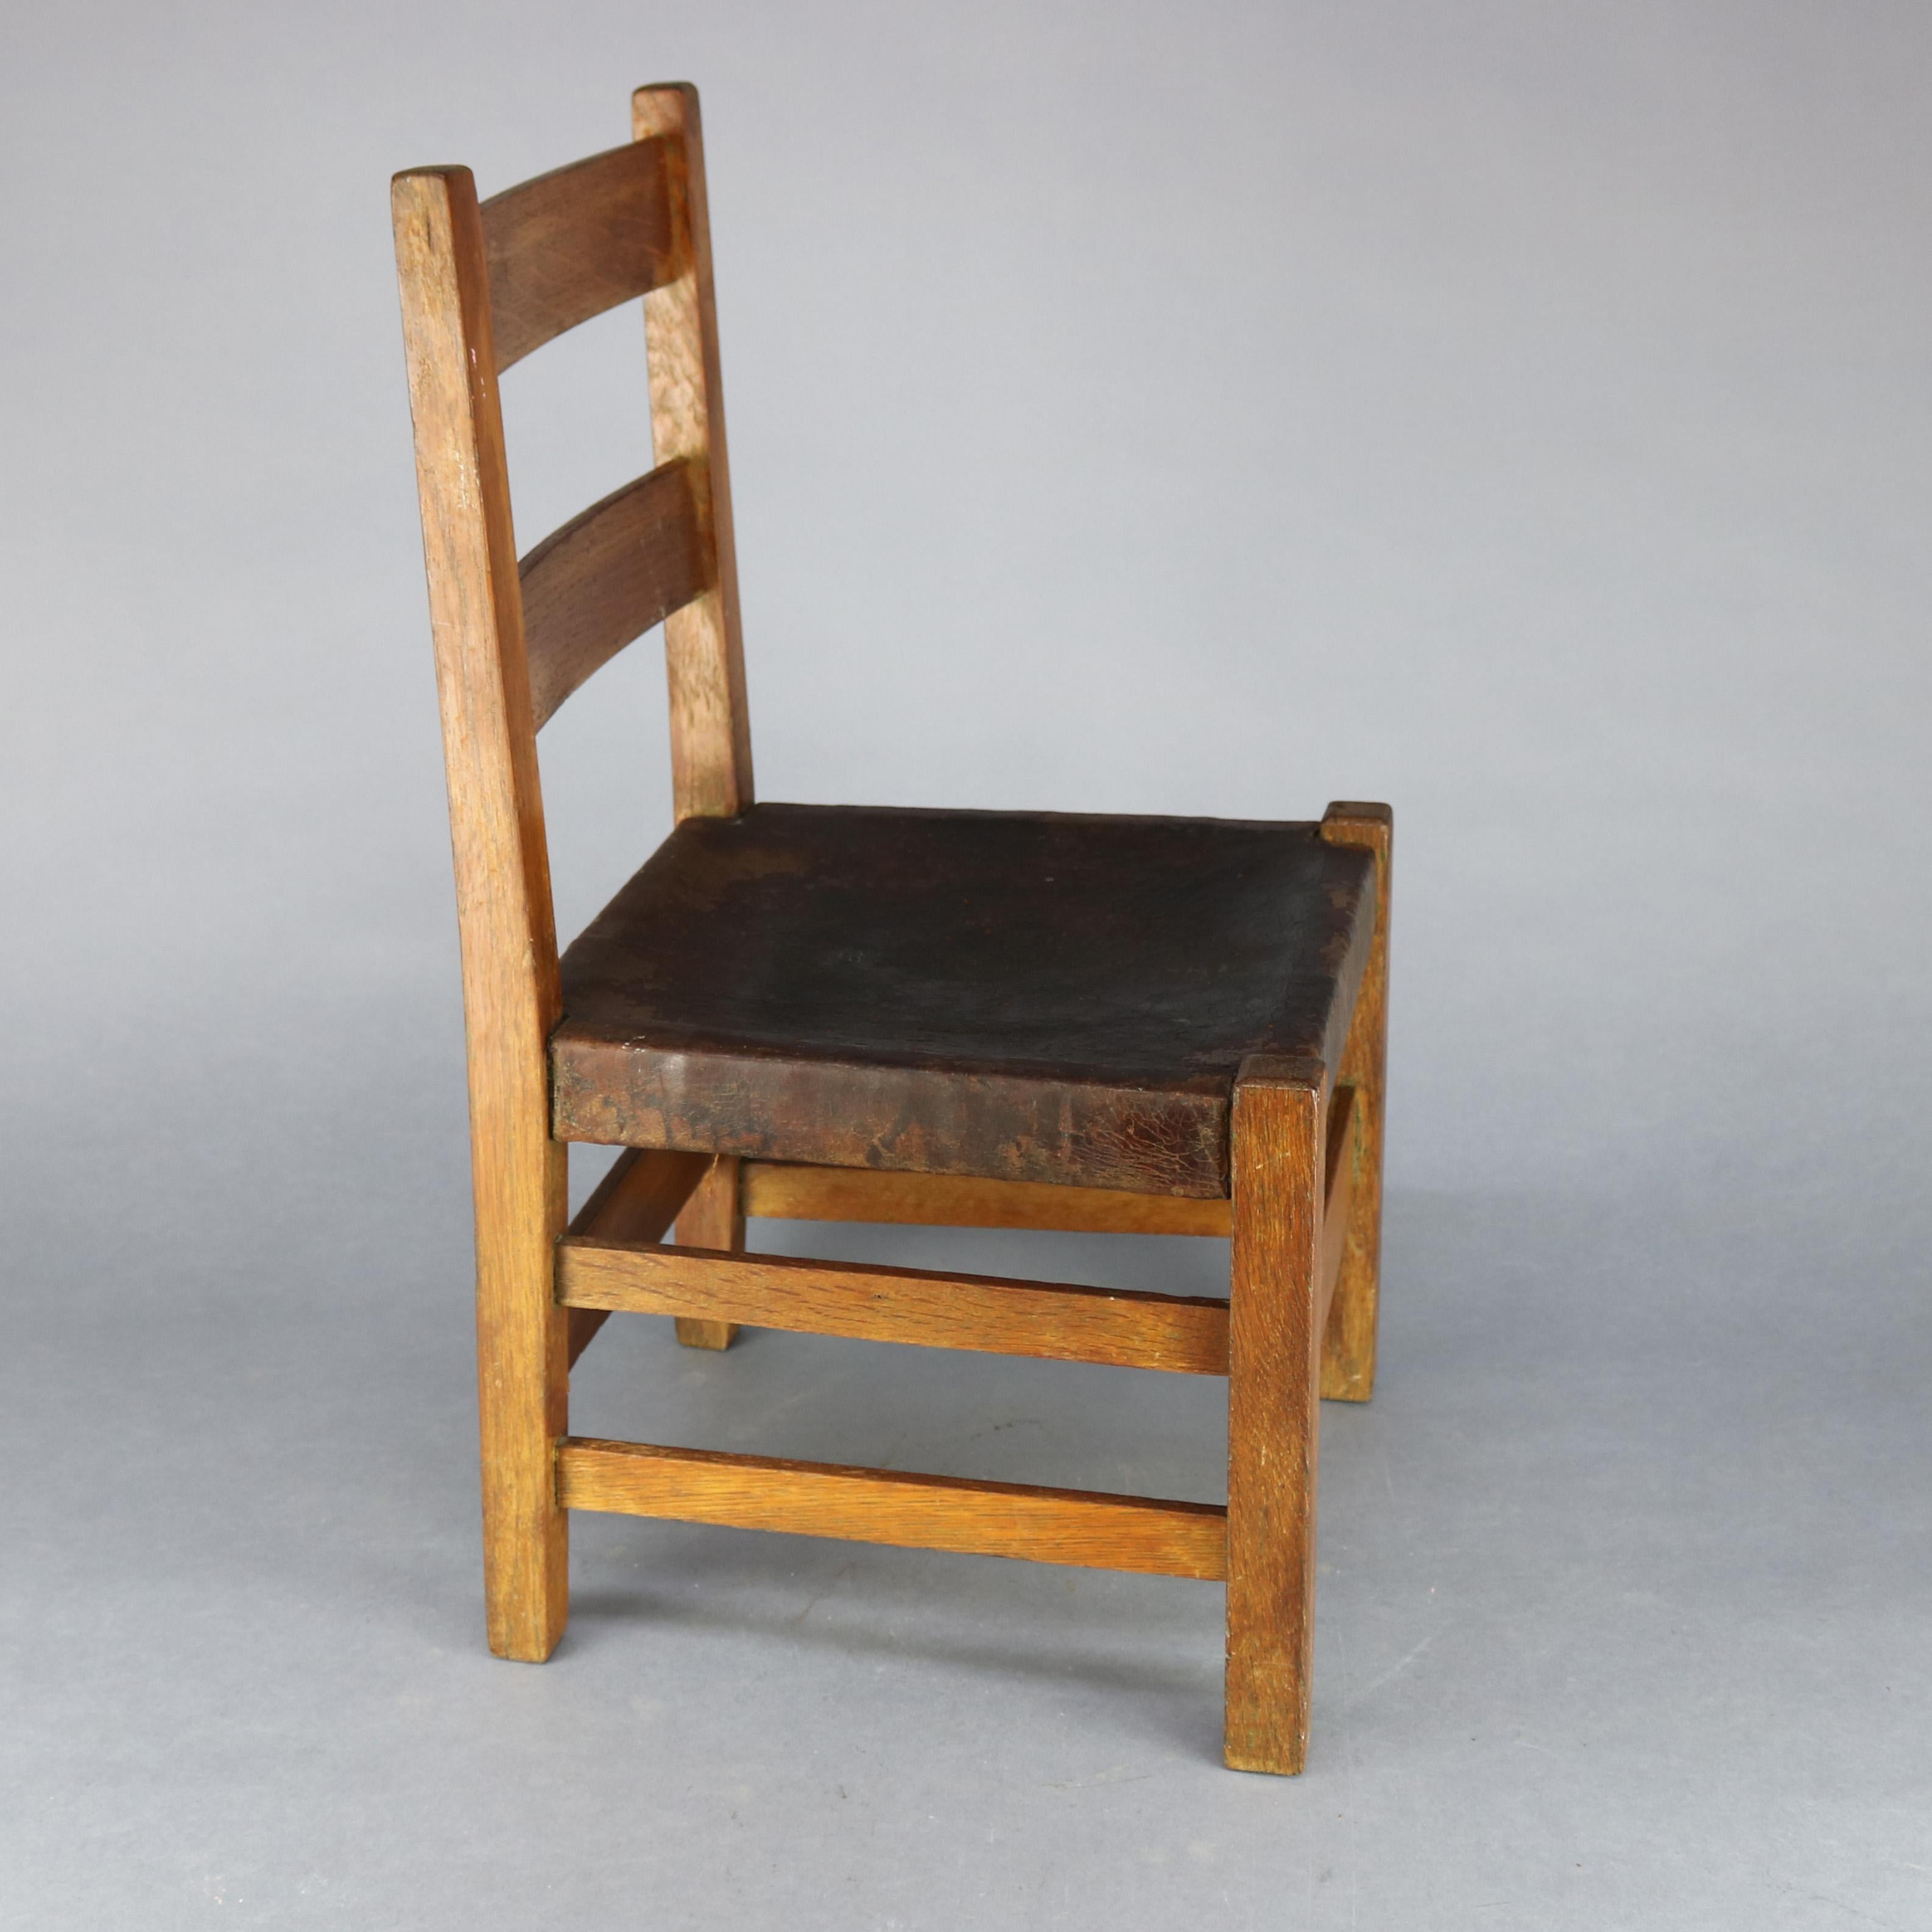 American Antique Arts & Crafts Gustav Stickley Childs Chair No 342, Circa 1910